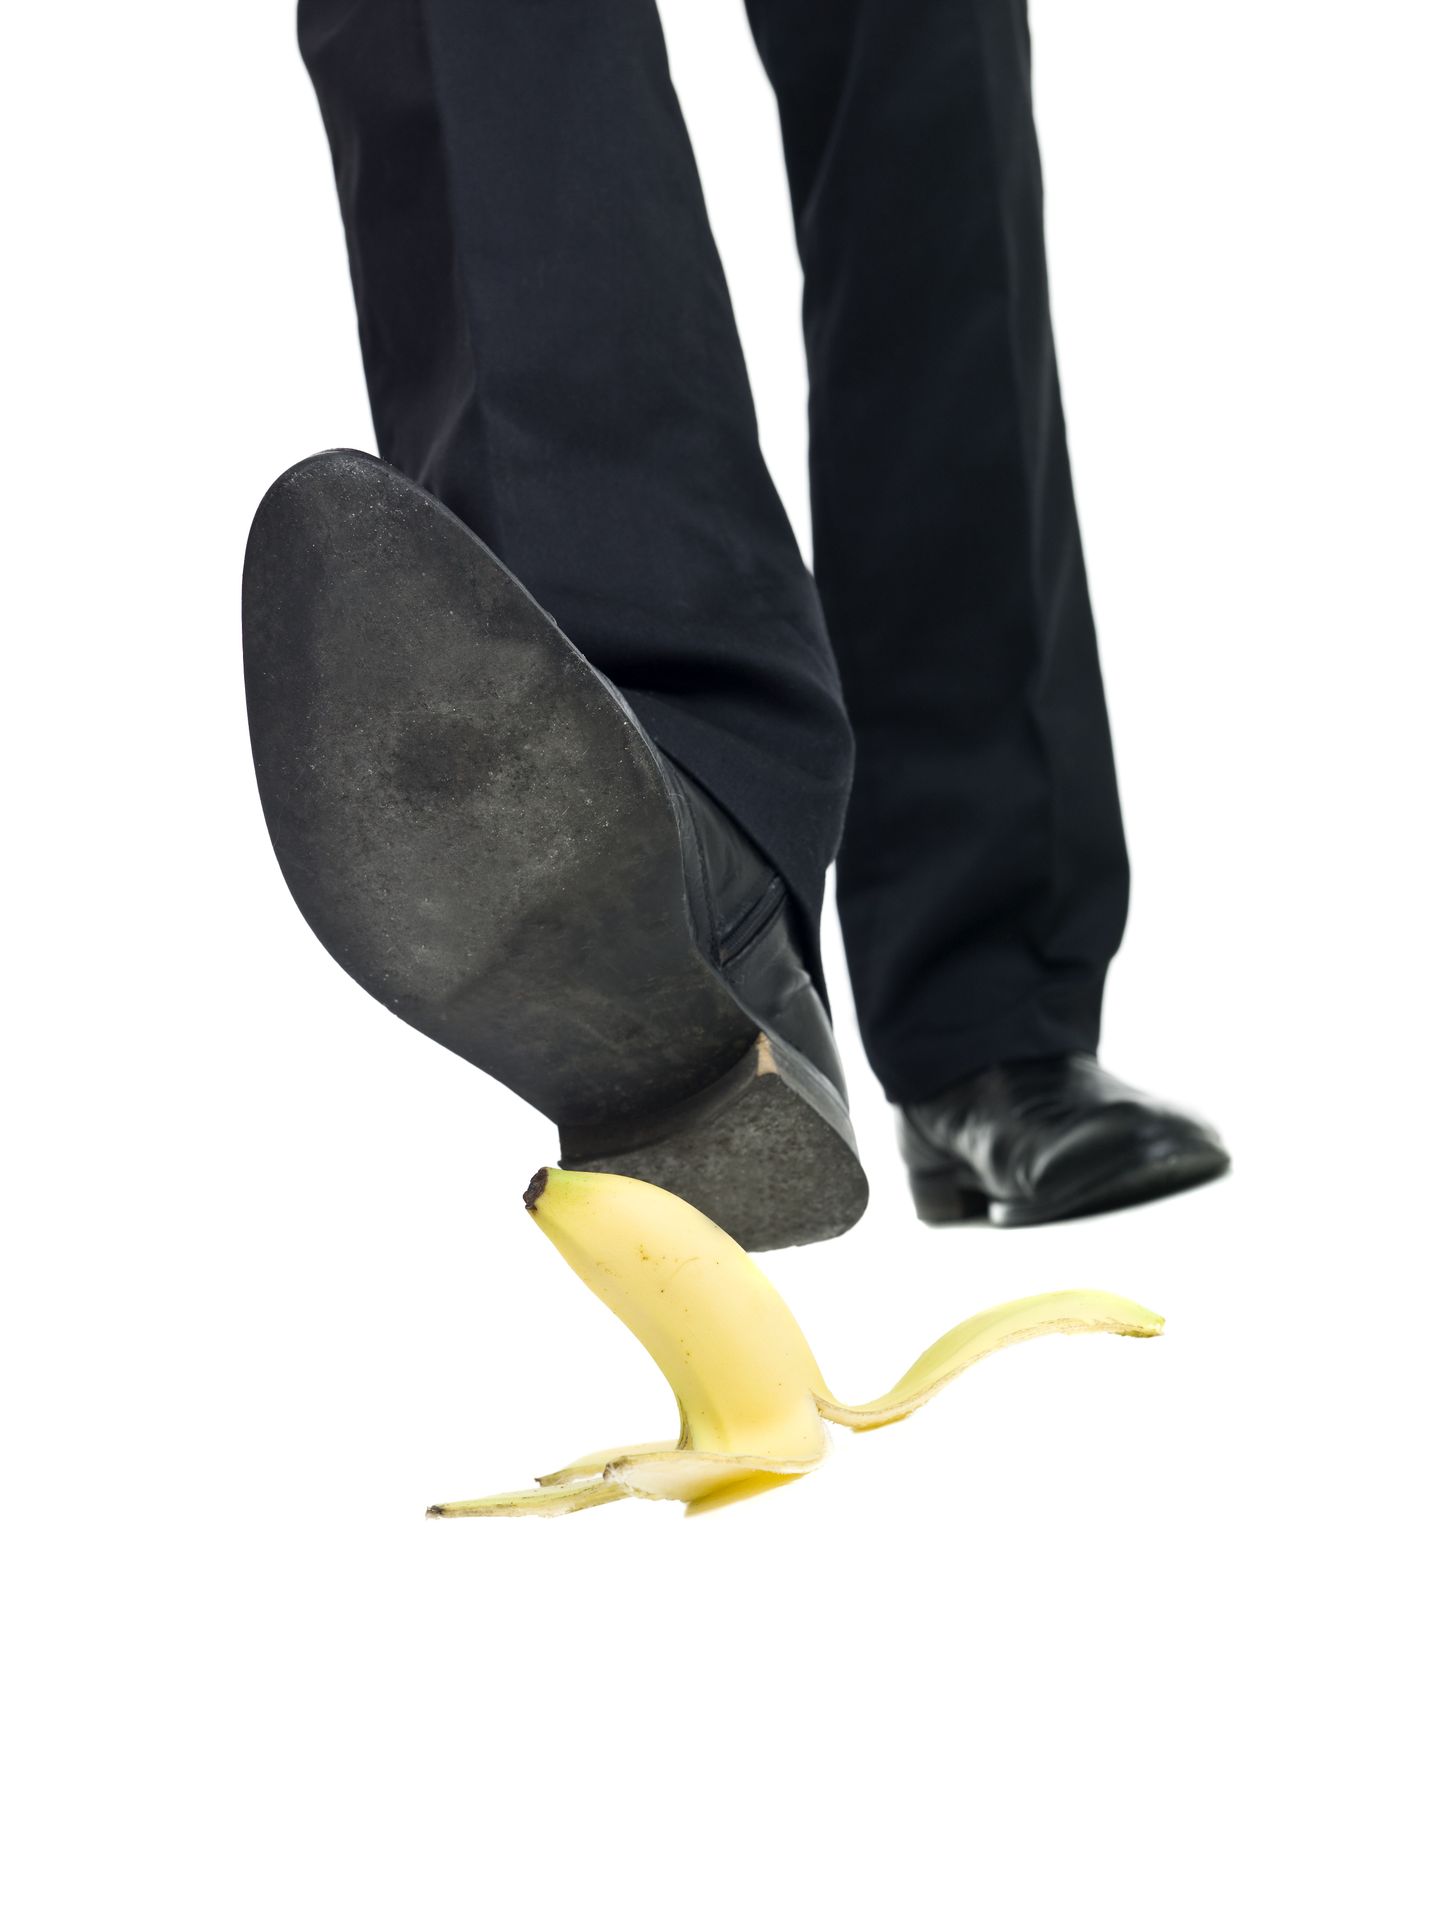 Ameeriklaste totraid õnnetusi võib võrrelda banaanikoorel libastumisega.